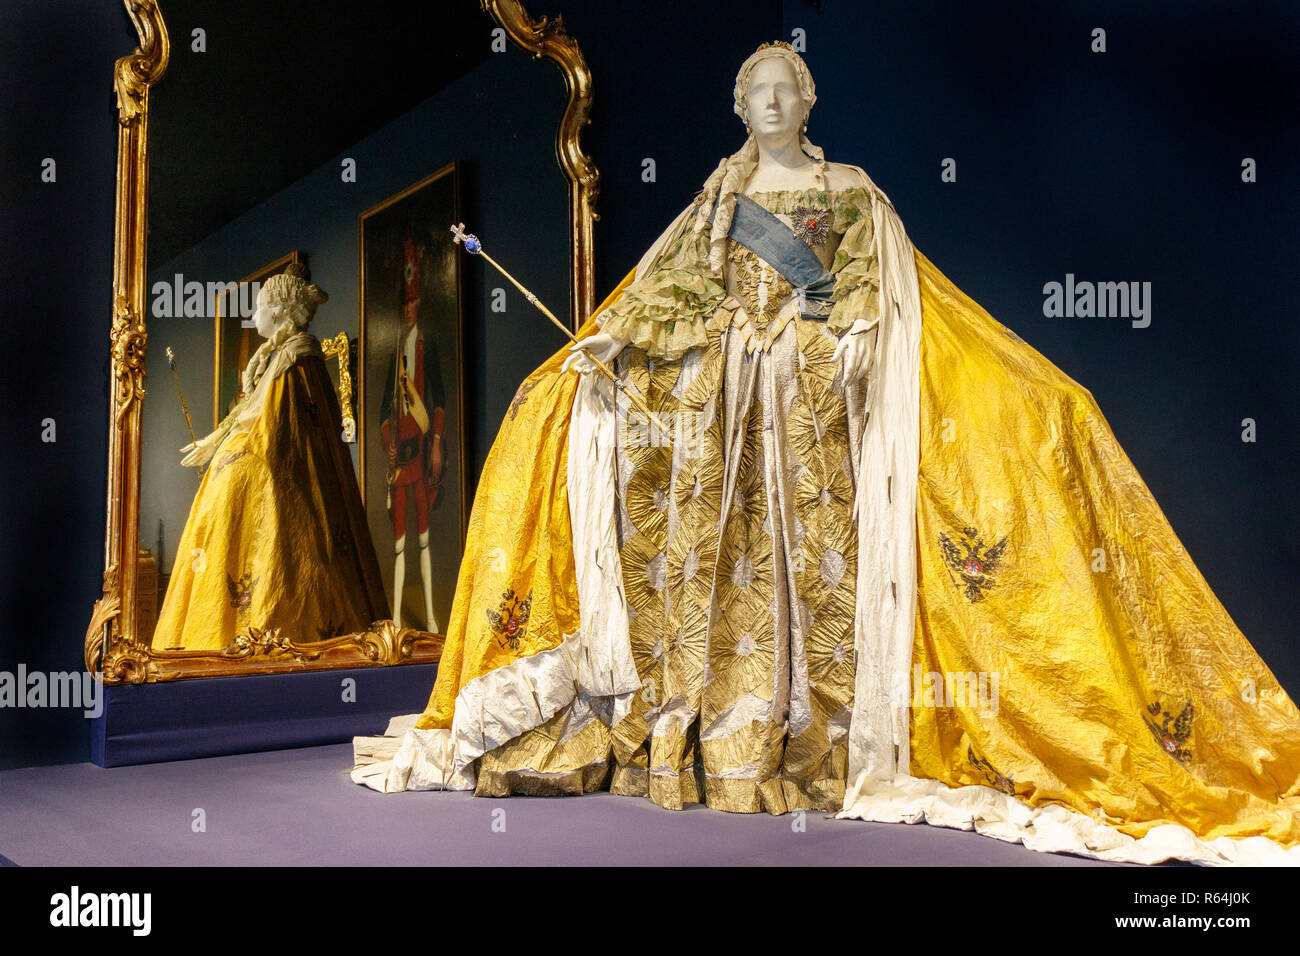 La vie-taille sculpture en papier mâché de l'Impératrice Elisabeth Petrovna portant une tenue officielle d'un tribunal. Par l'artiste belge Isabelle de Borchgrave. Banque D'Images